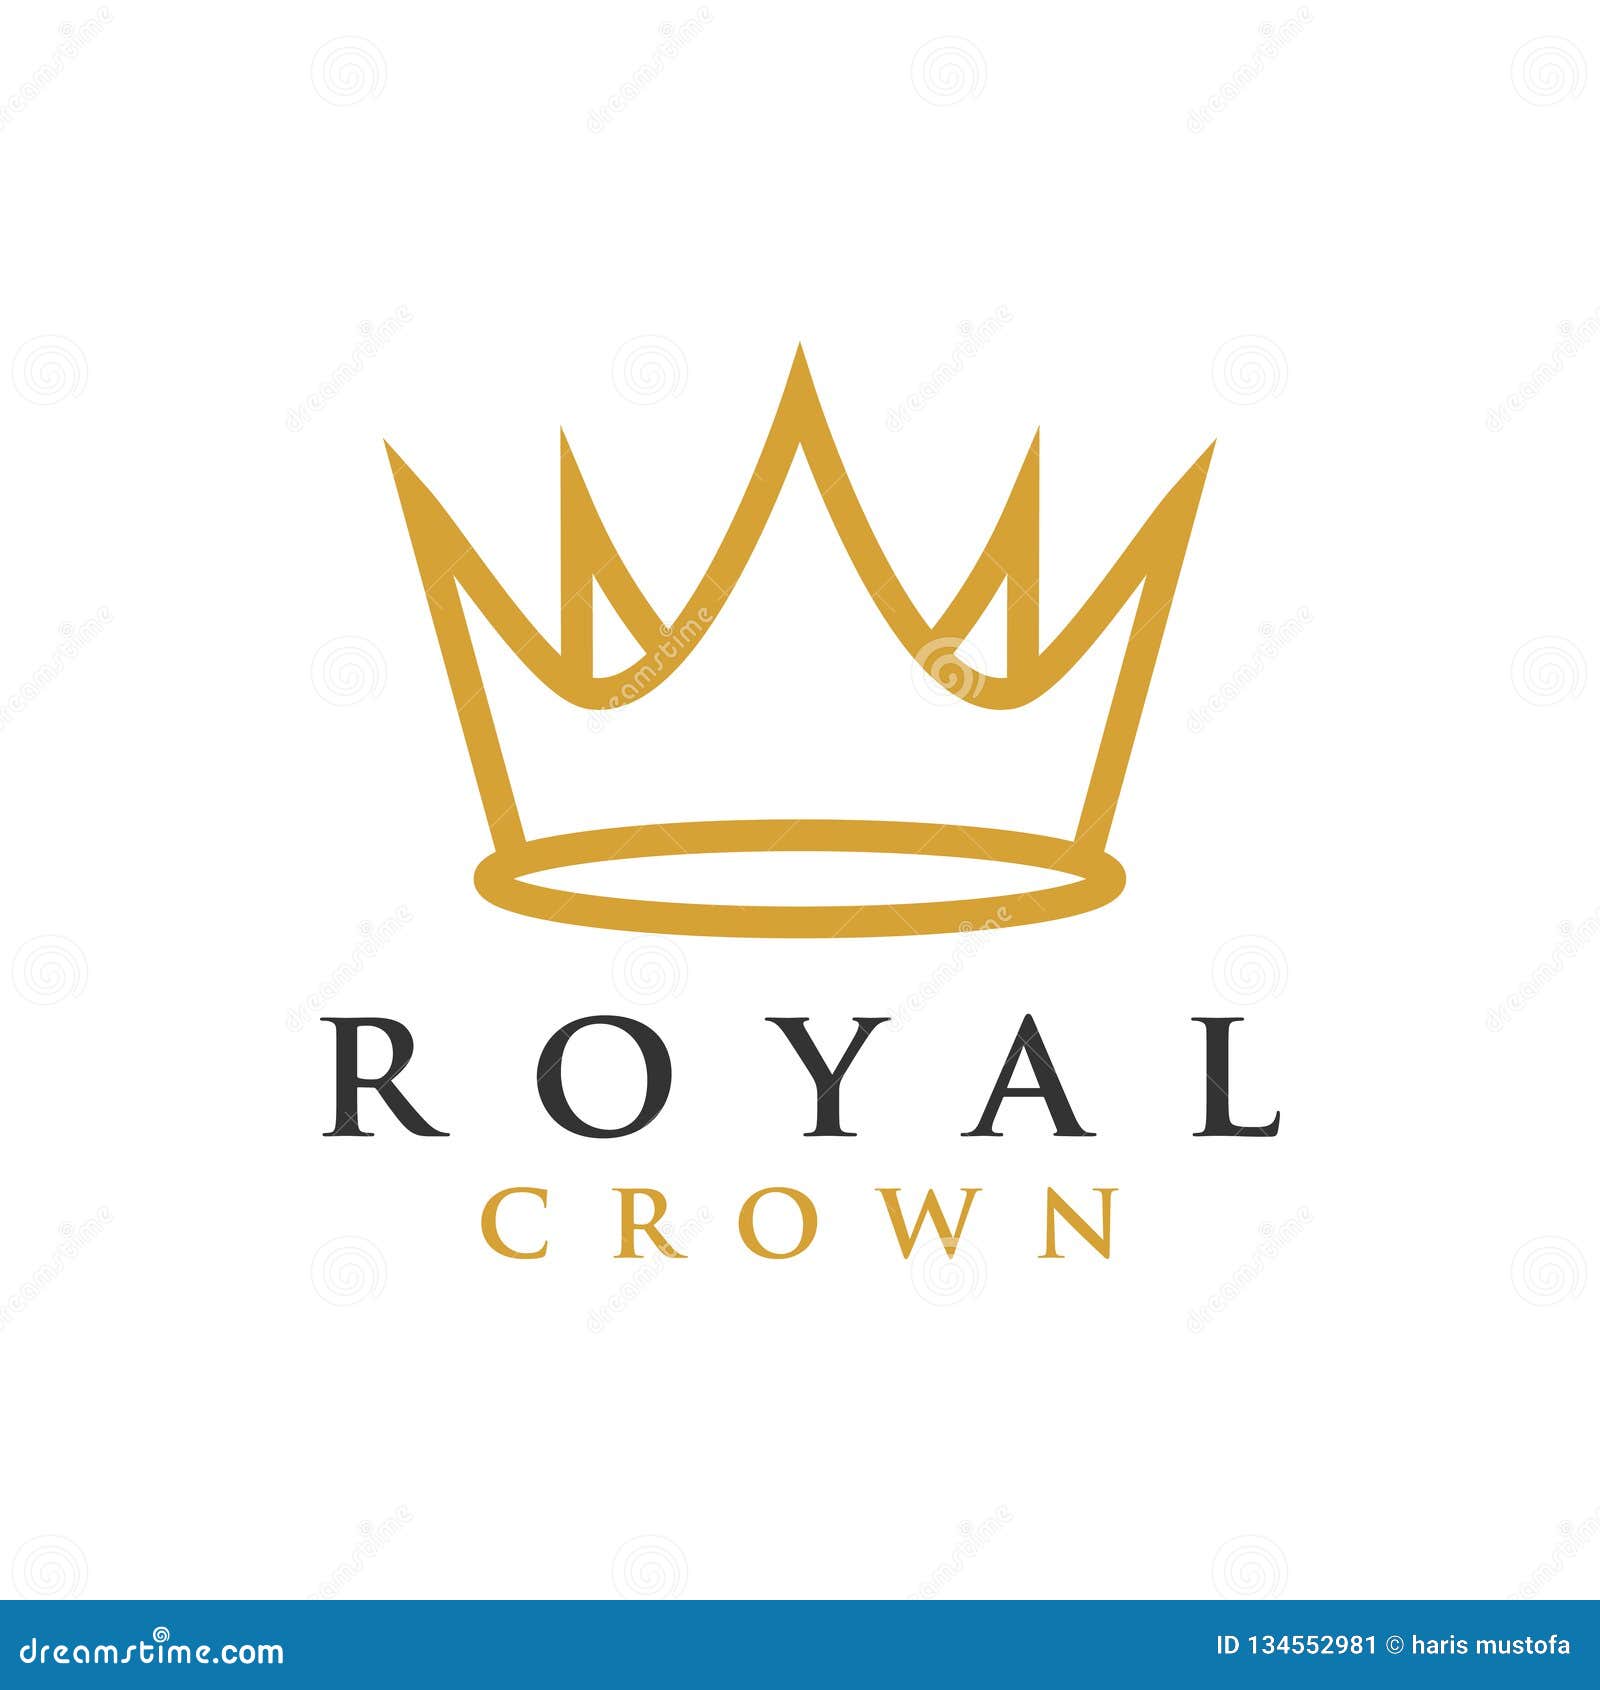 Download Crown Royal Label Template - Ythoreccio